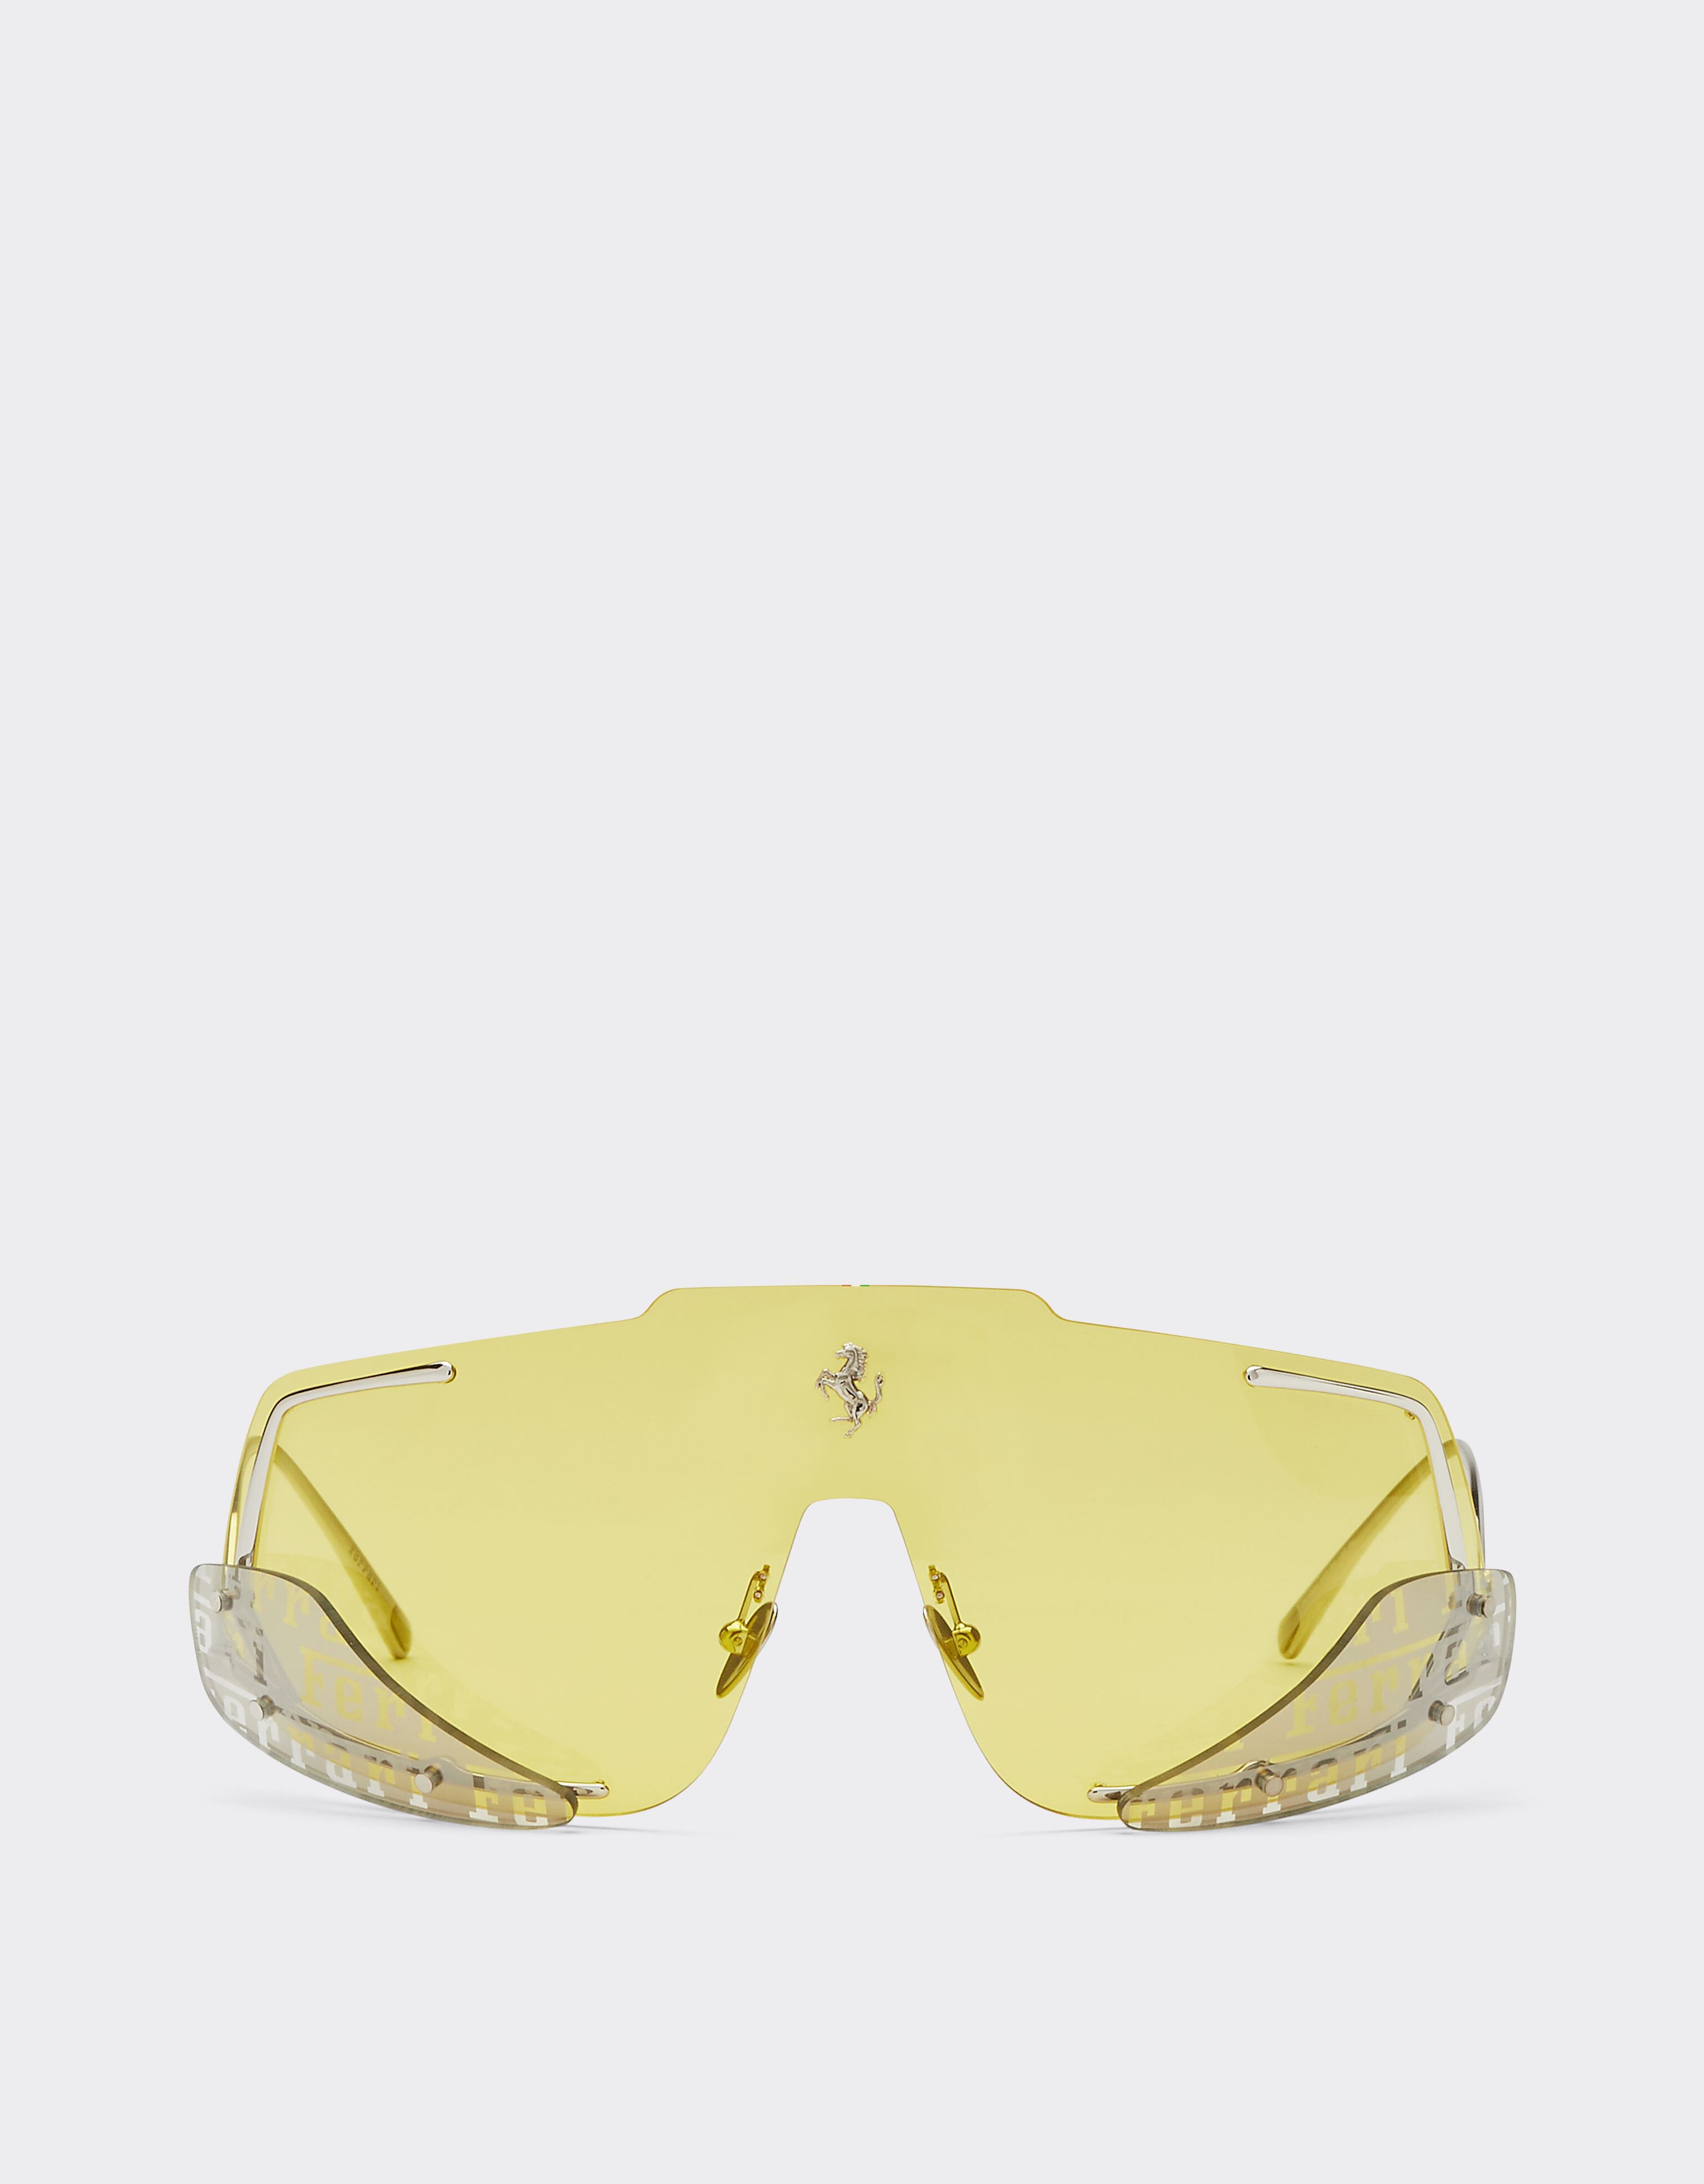 Ferrari Ferrari sunglasses with yellow lenses Silver F1247f